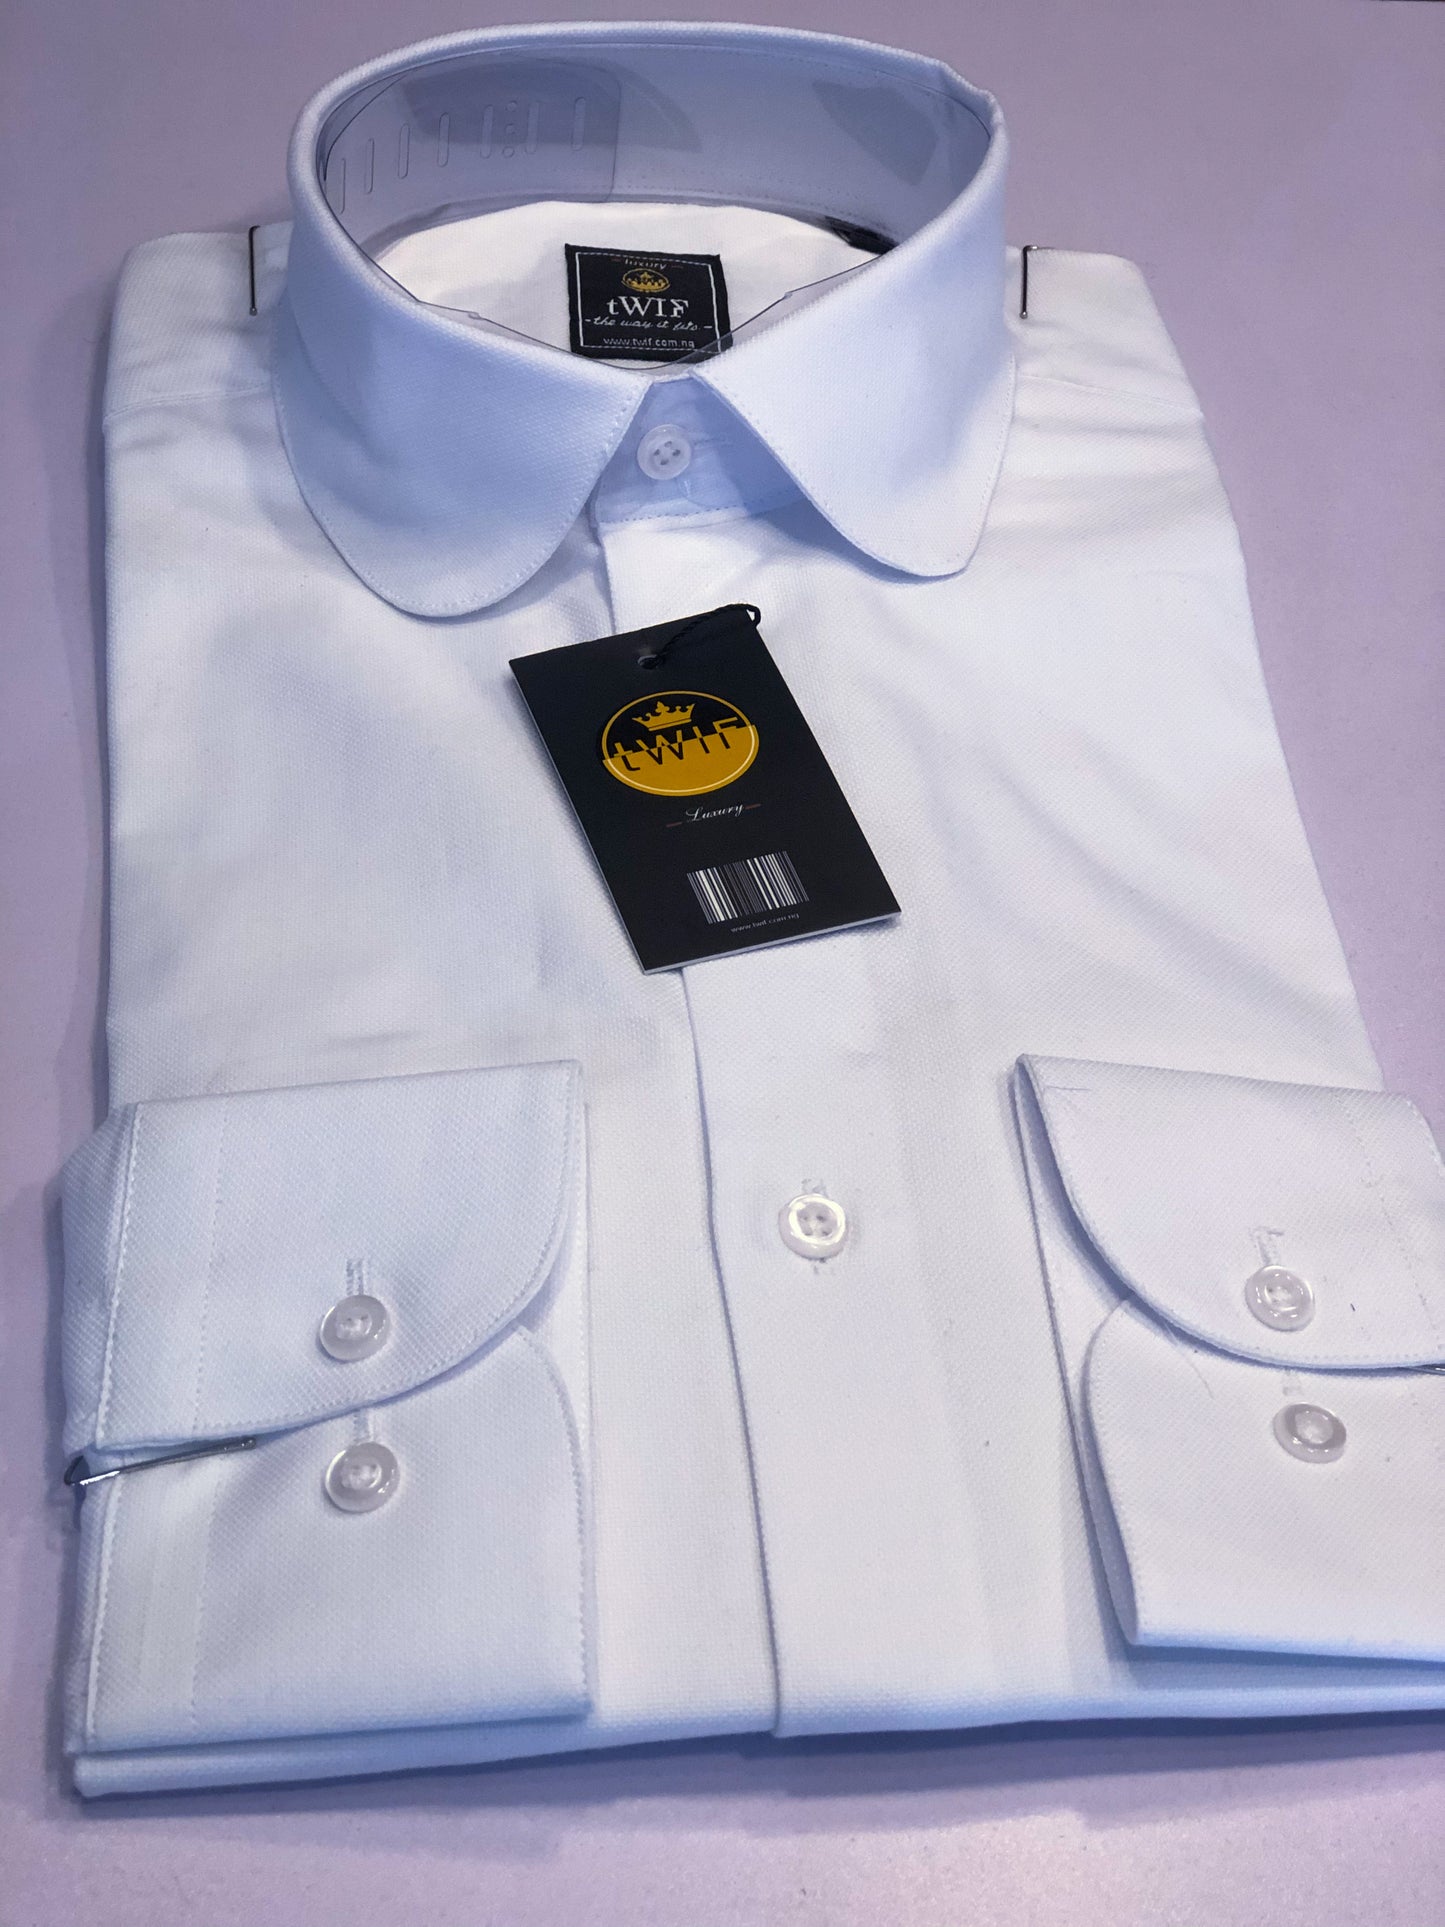 White Oxford club collar shirt